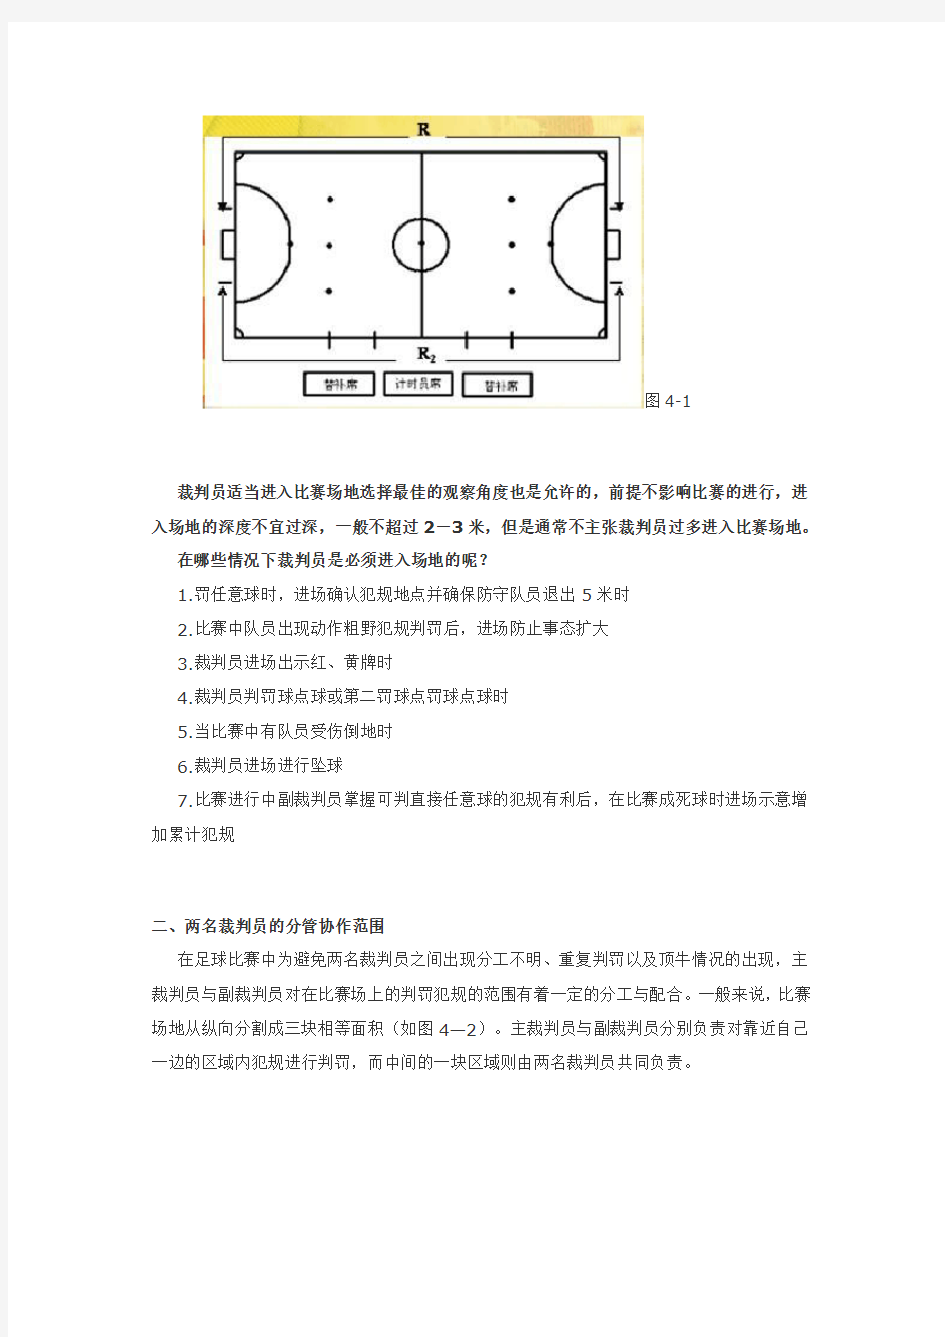 五人制足球规则和判罚手势 (1)